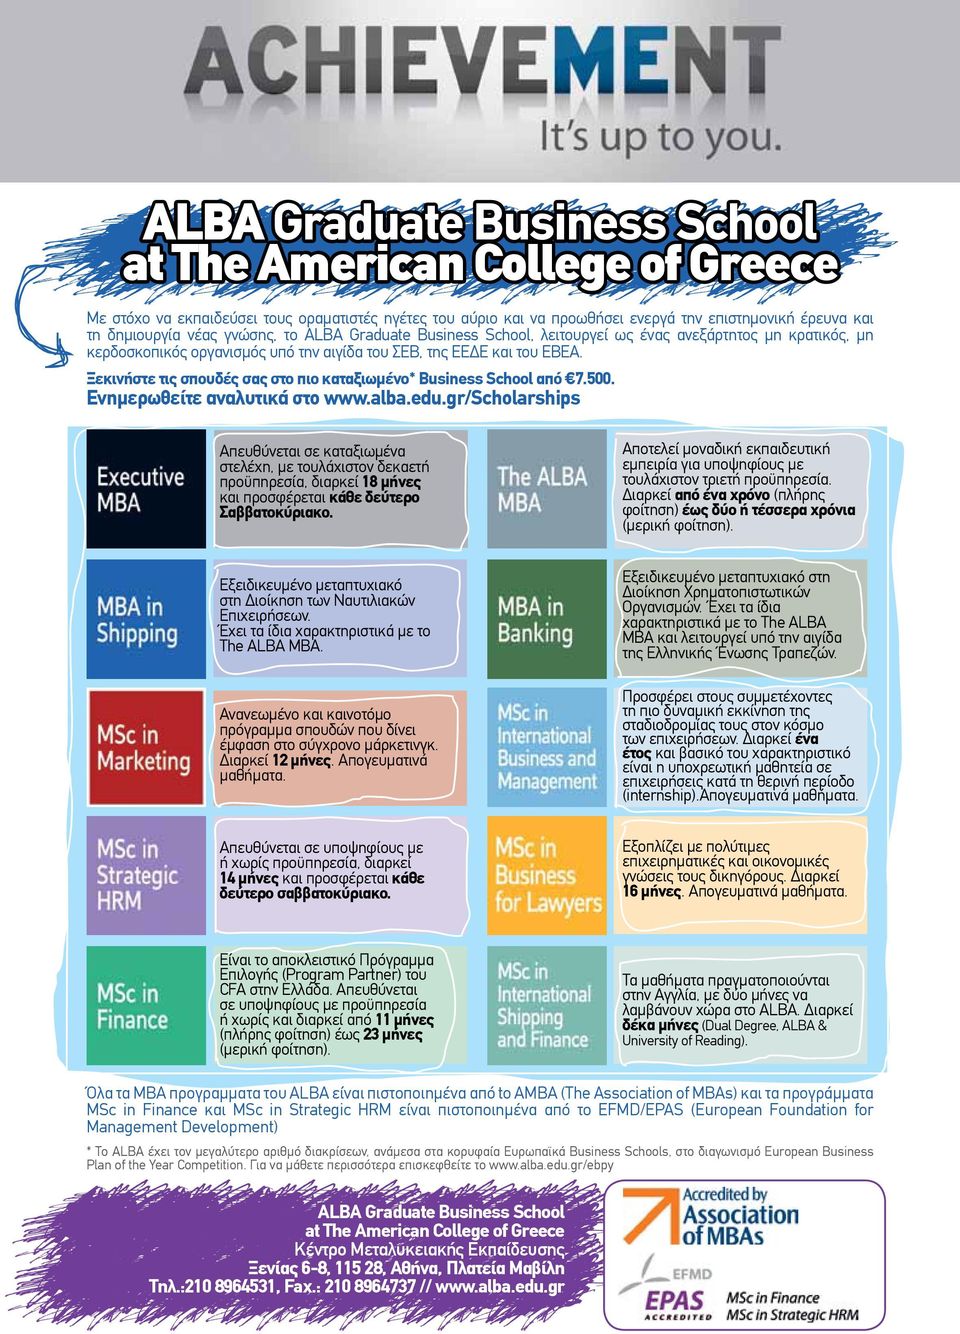 Ξεκινήστε τις σπουδές σας στο πιο καταξιωμένο* Business School από 7.500. Ενημερωθείτε αναλυτικά στο www.alba.edu.